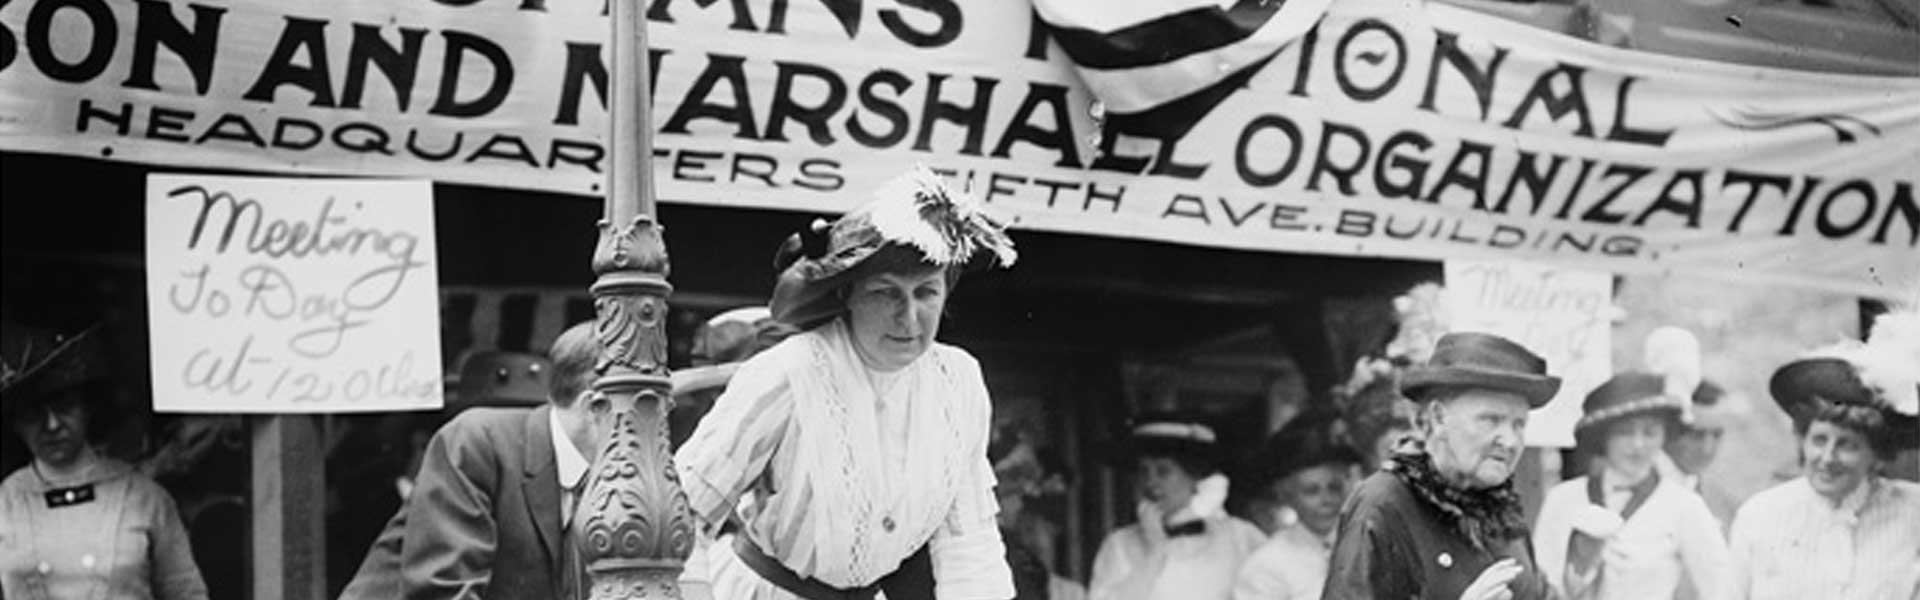 Women's National Wilson and Marshall Organization